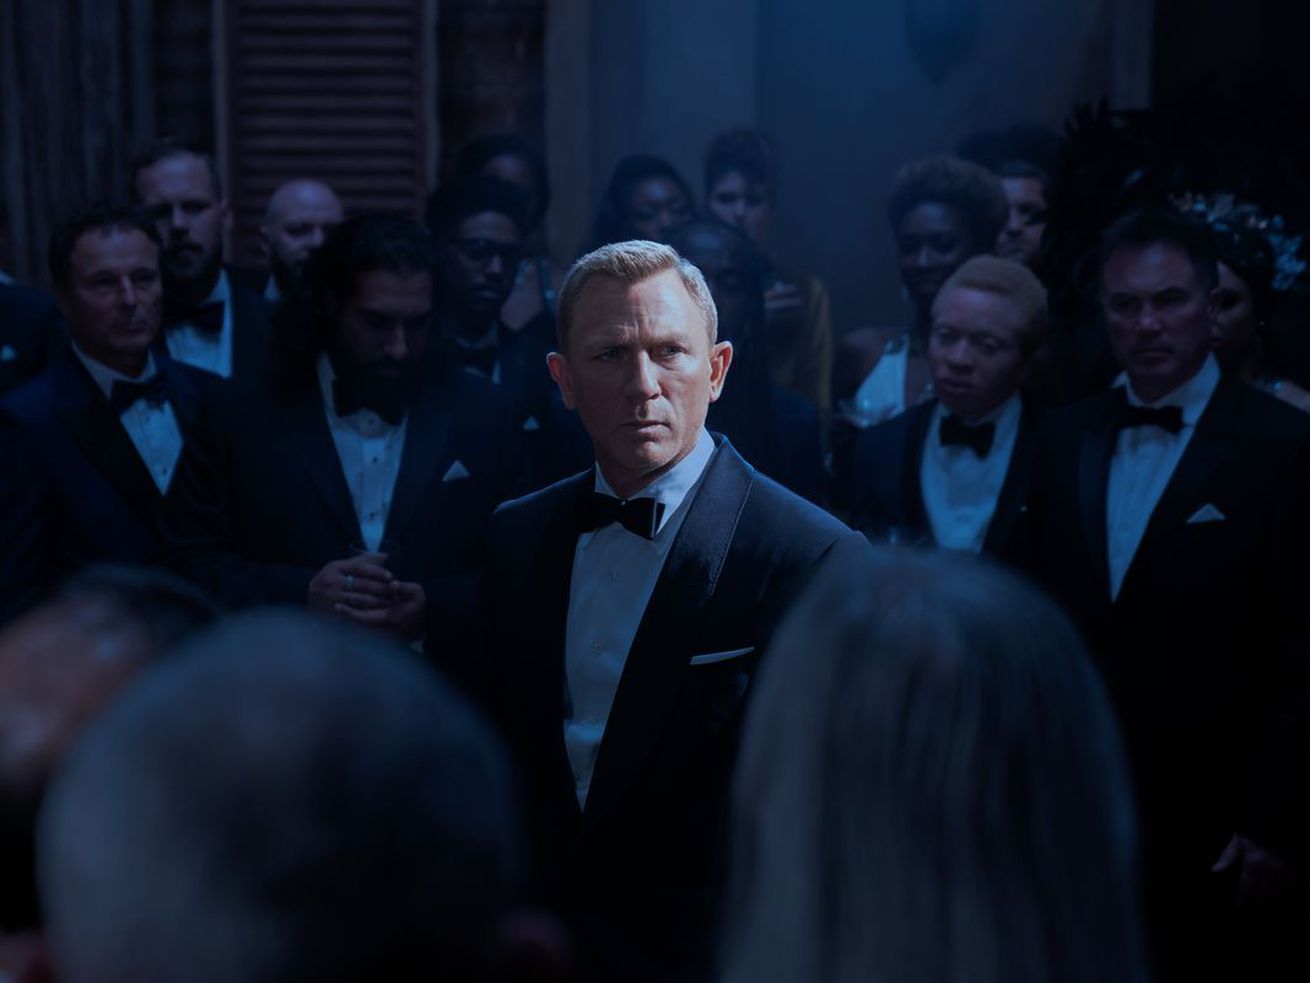 Goodbye, Mr. Bond